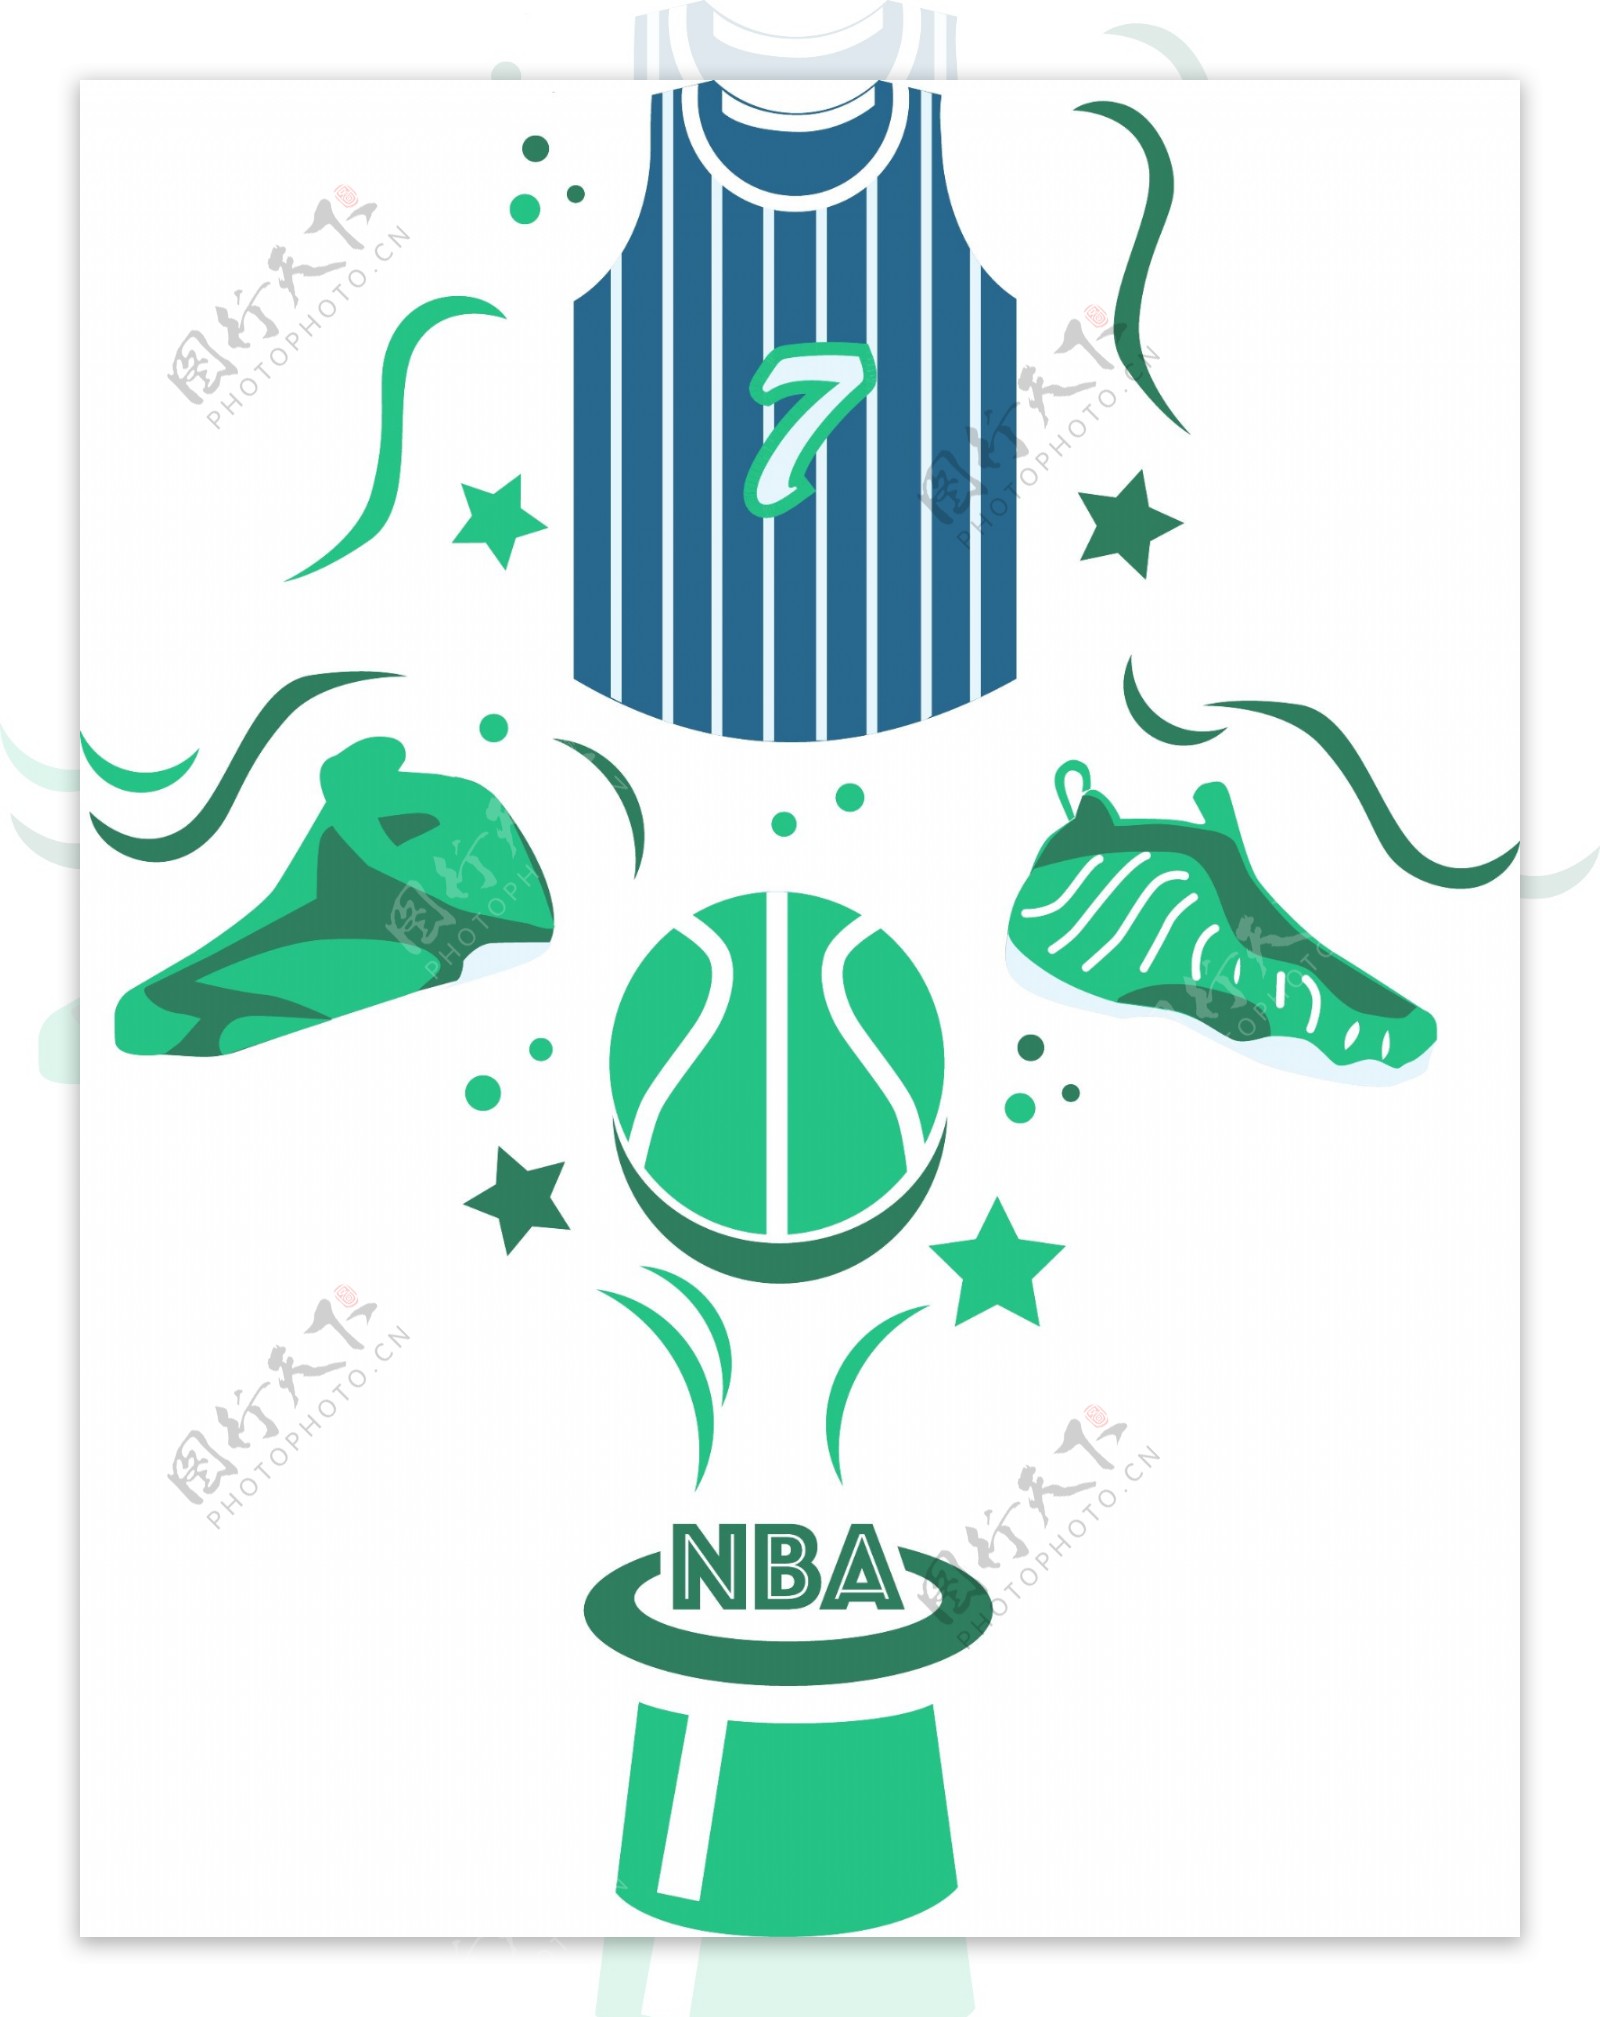 蓝绿色系NBA篮球系列插画设计